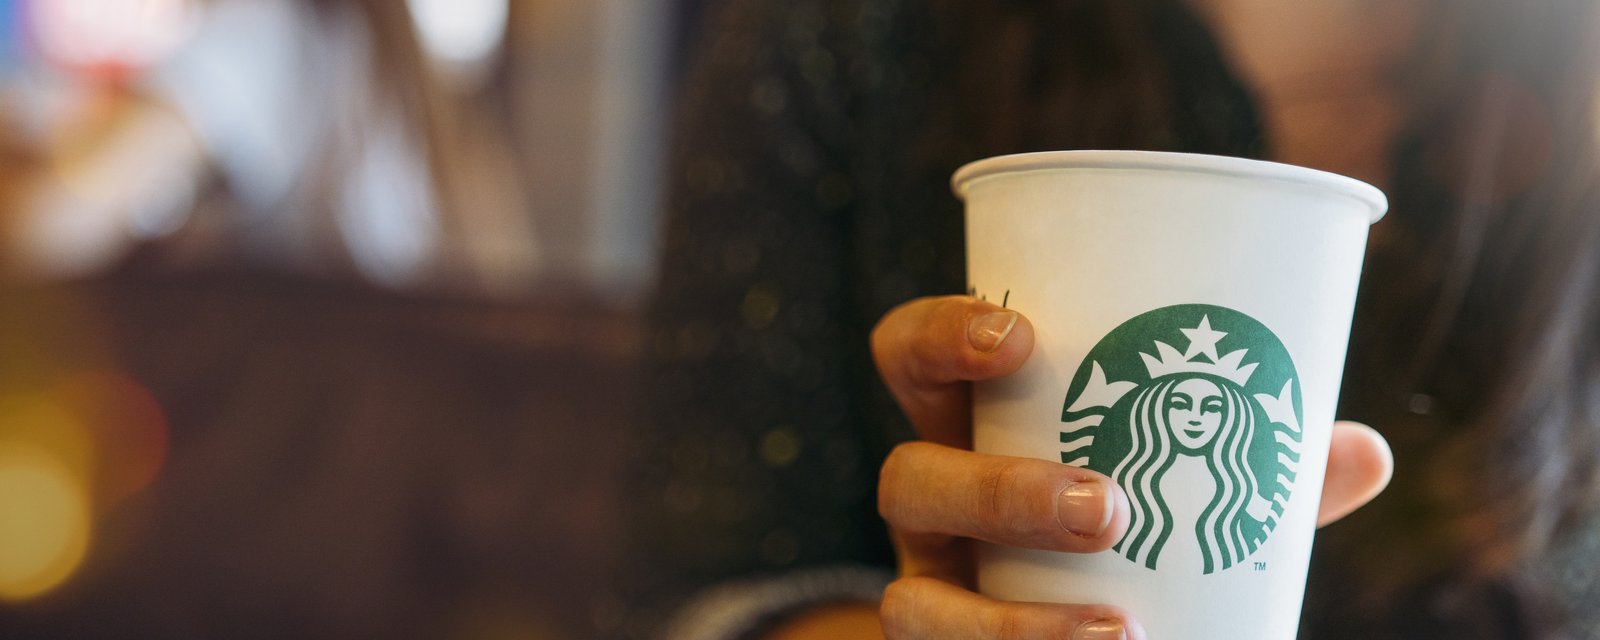 Le café est gratuit cette semaine dans tous les Starbucks du pays